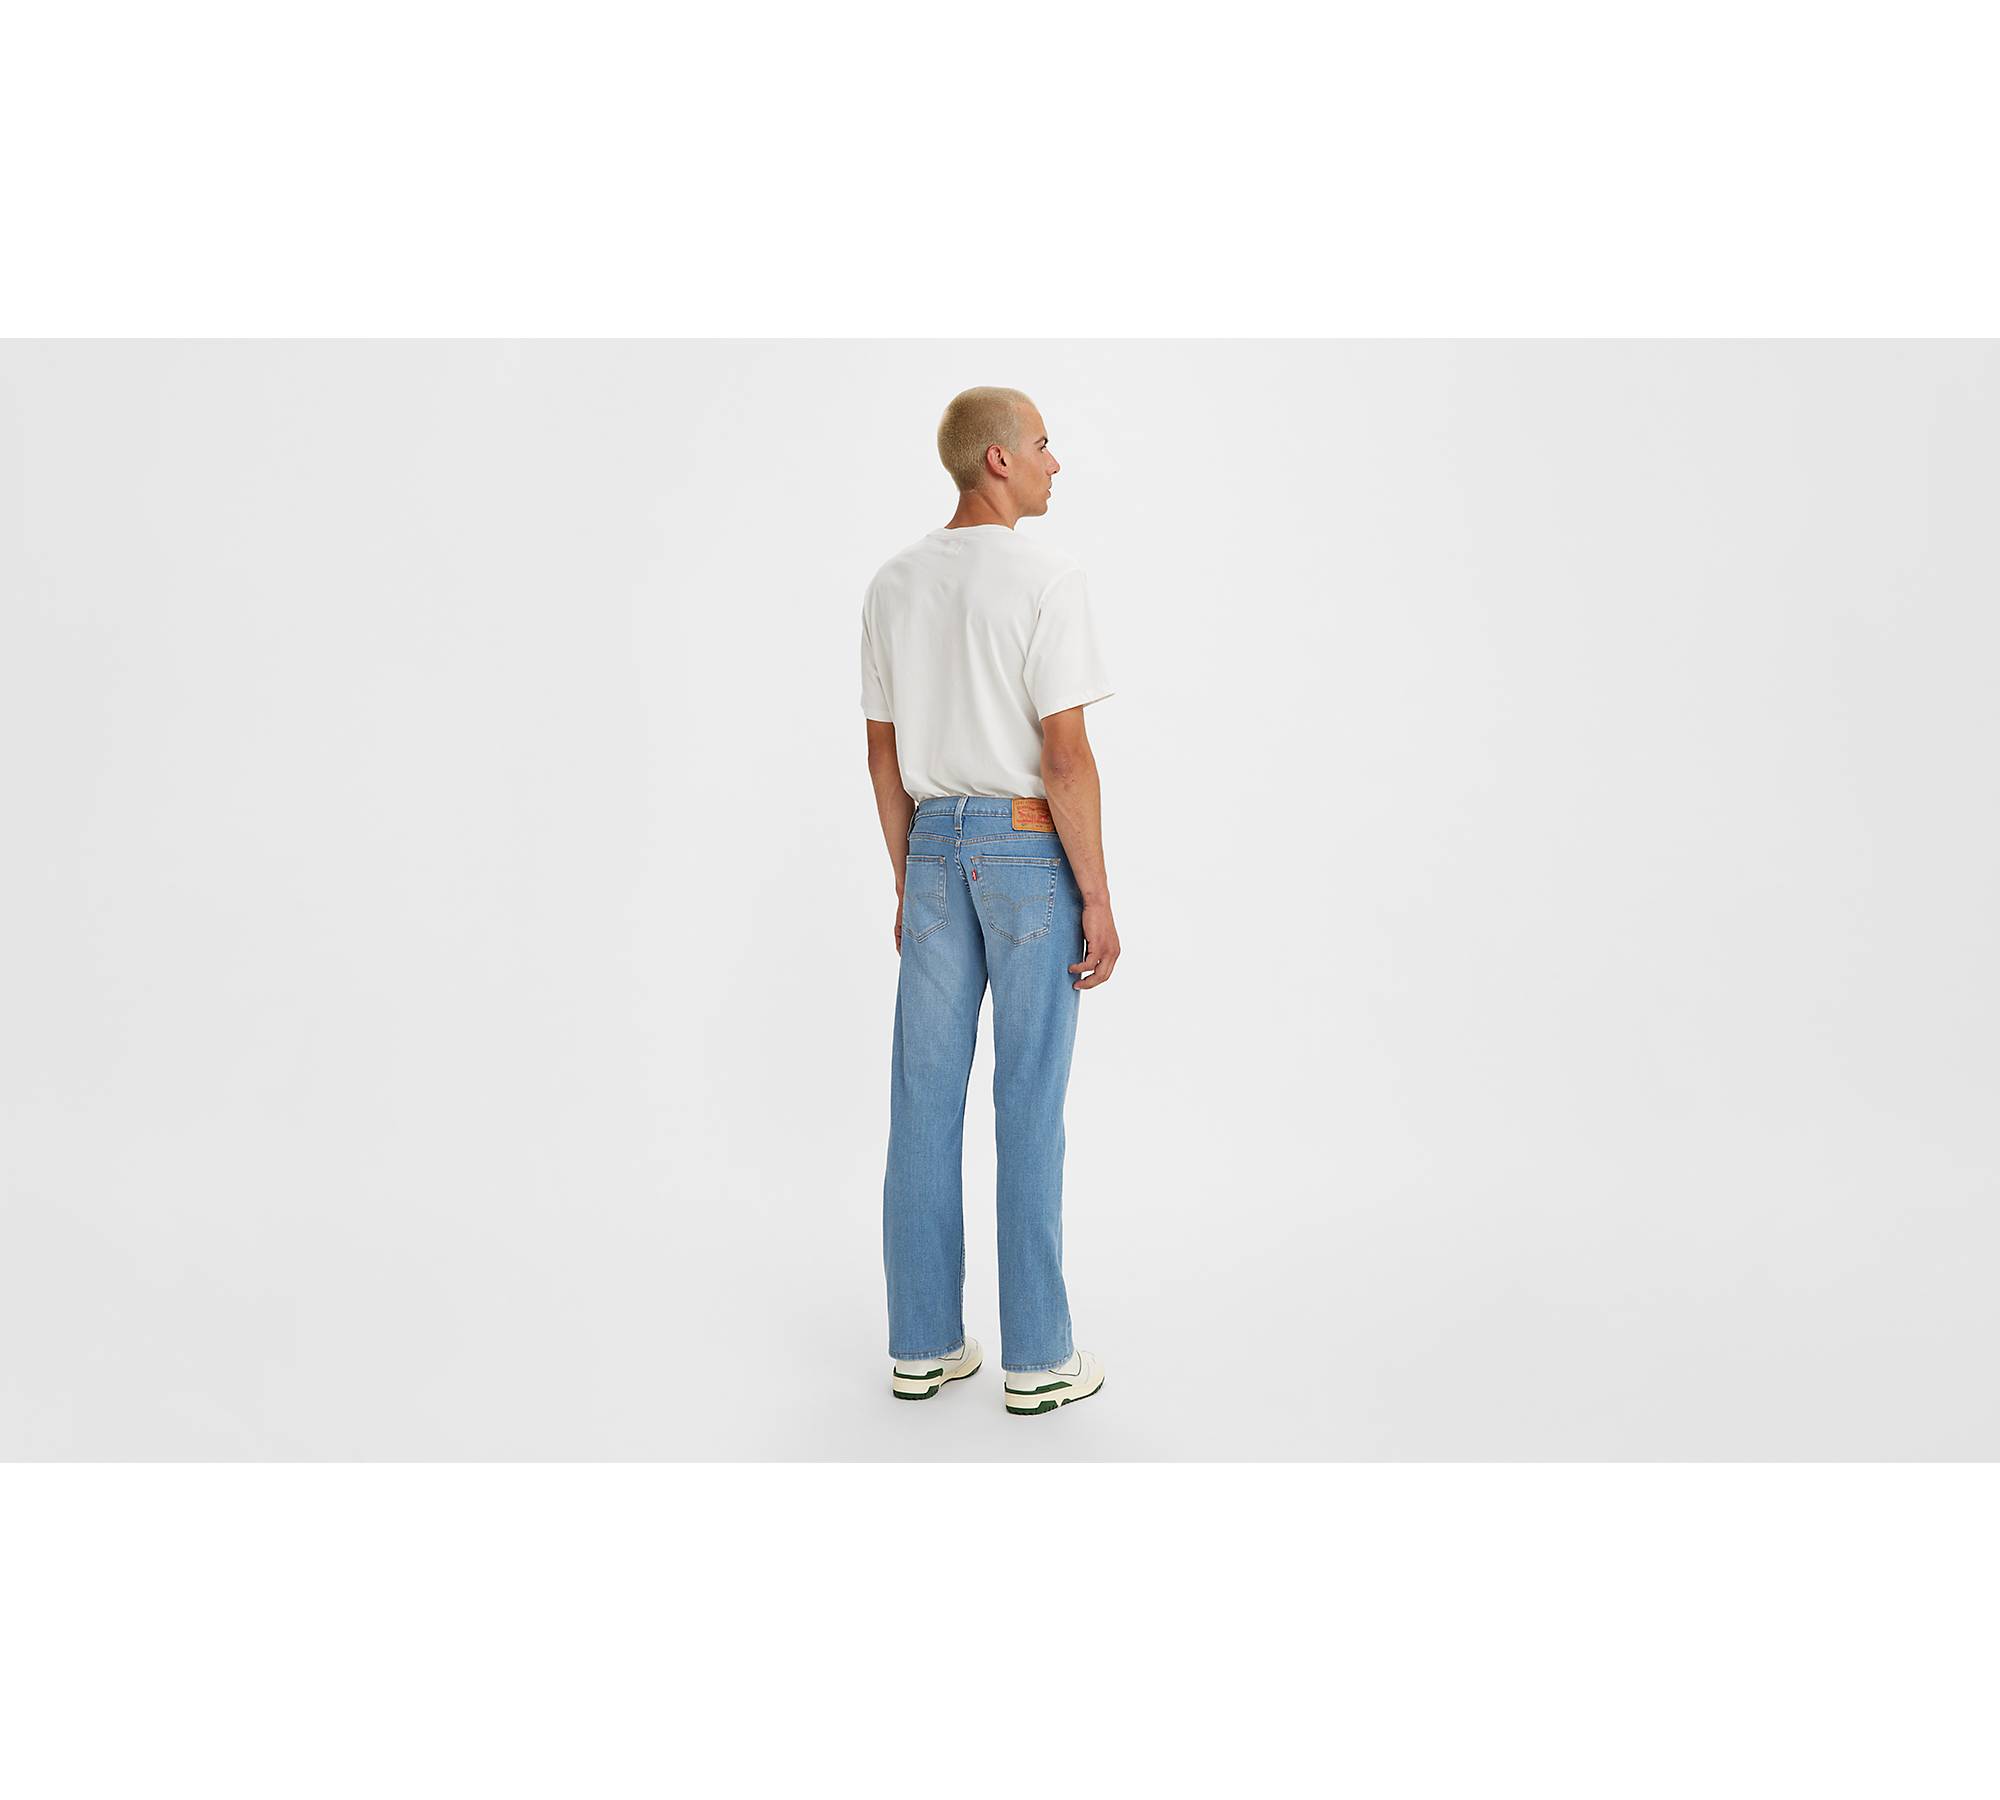 Levi's Men's 527 Slim Bootcut Fit Jeans